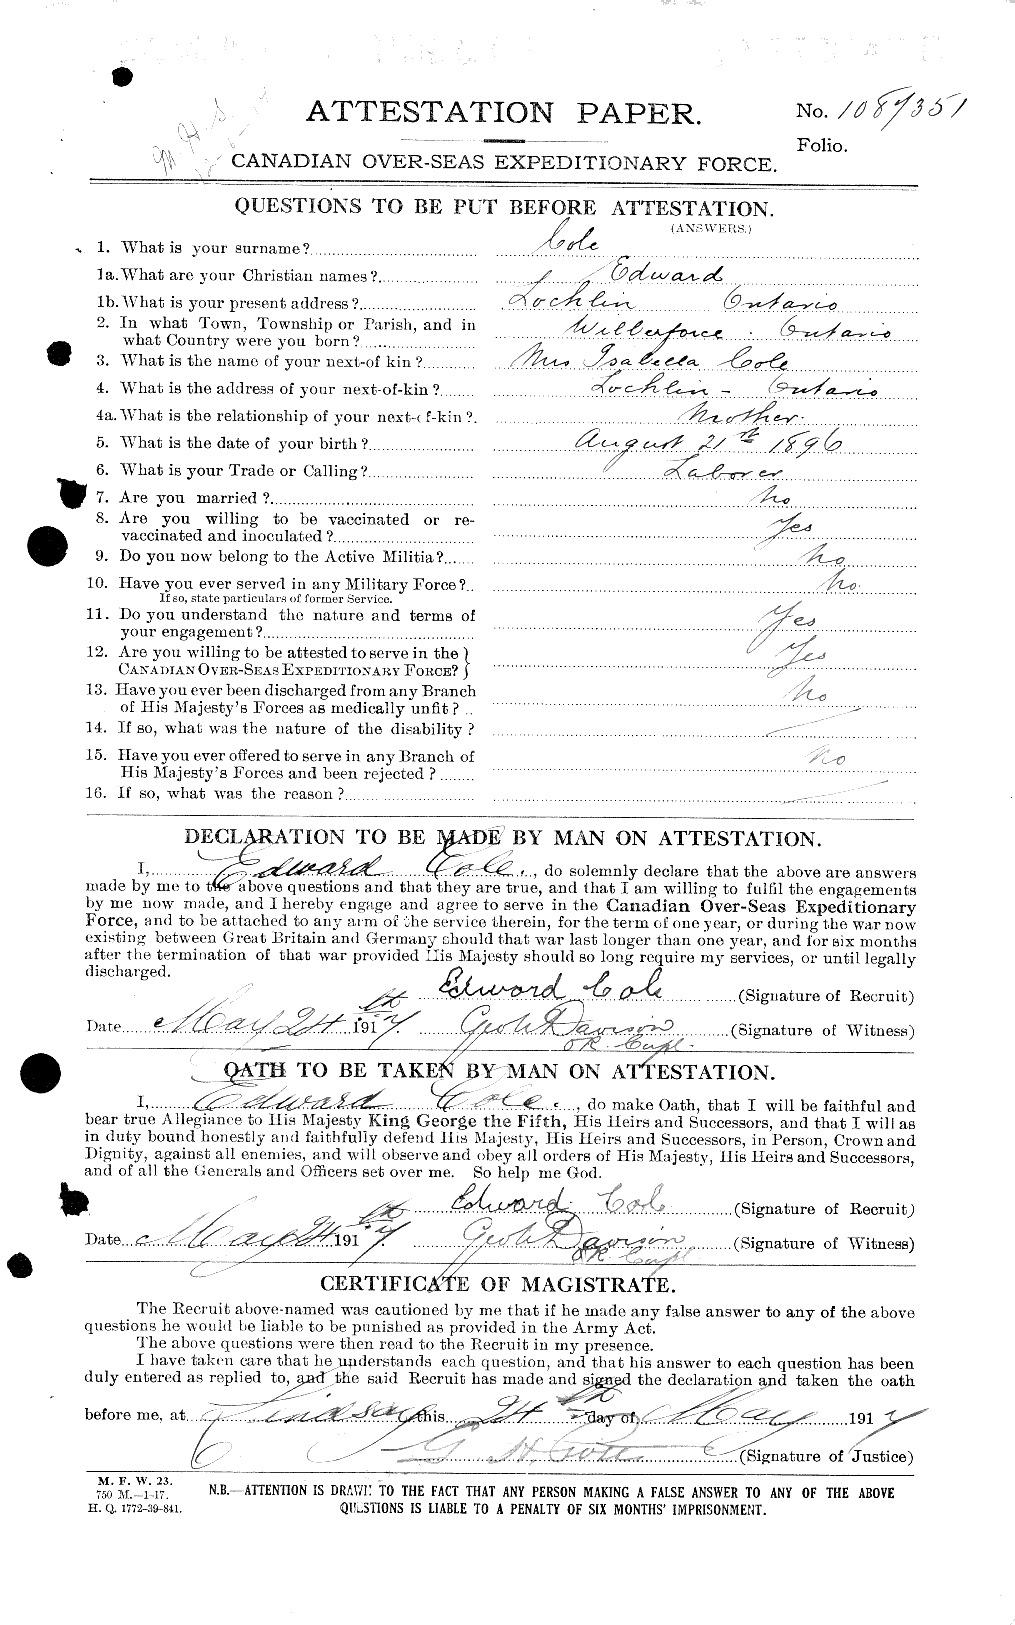 Dossiers du Personnel de la Première Guerre mondiale - CEC 027678a